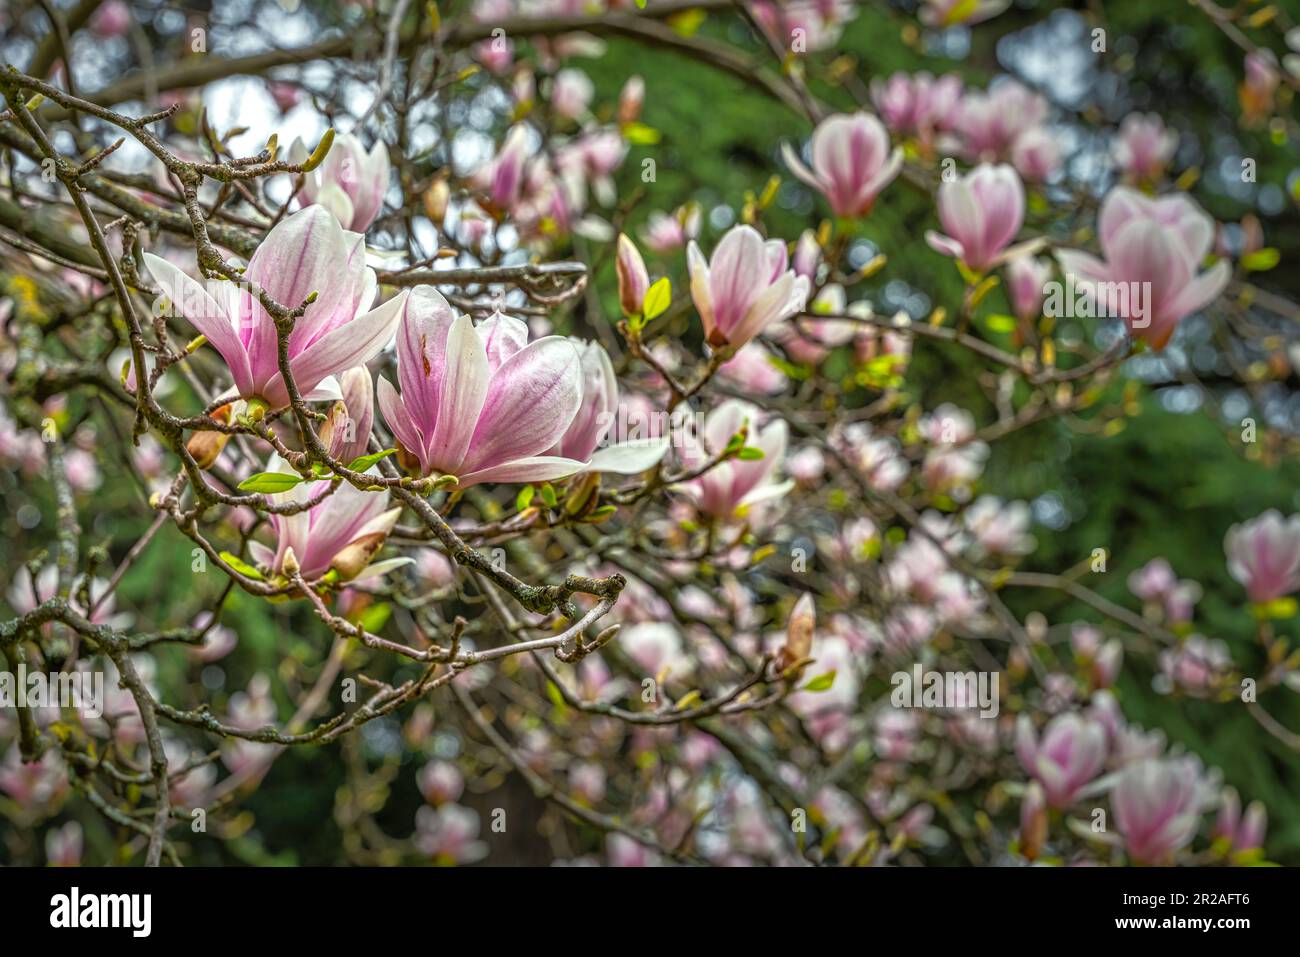 Flowering of the Magnolia plant in the People's Park. Reggio Emilia, Emilia Romagna, Italy, Europe Stock Photo